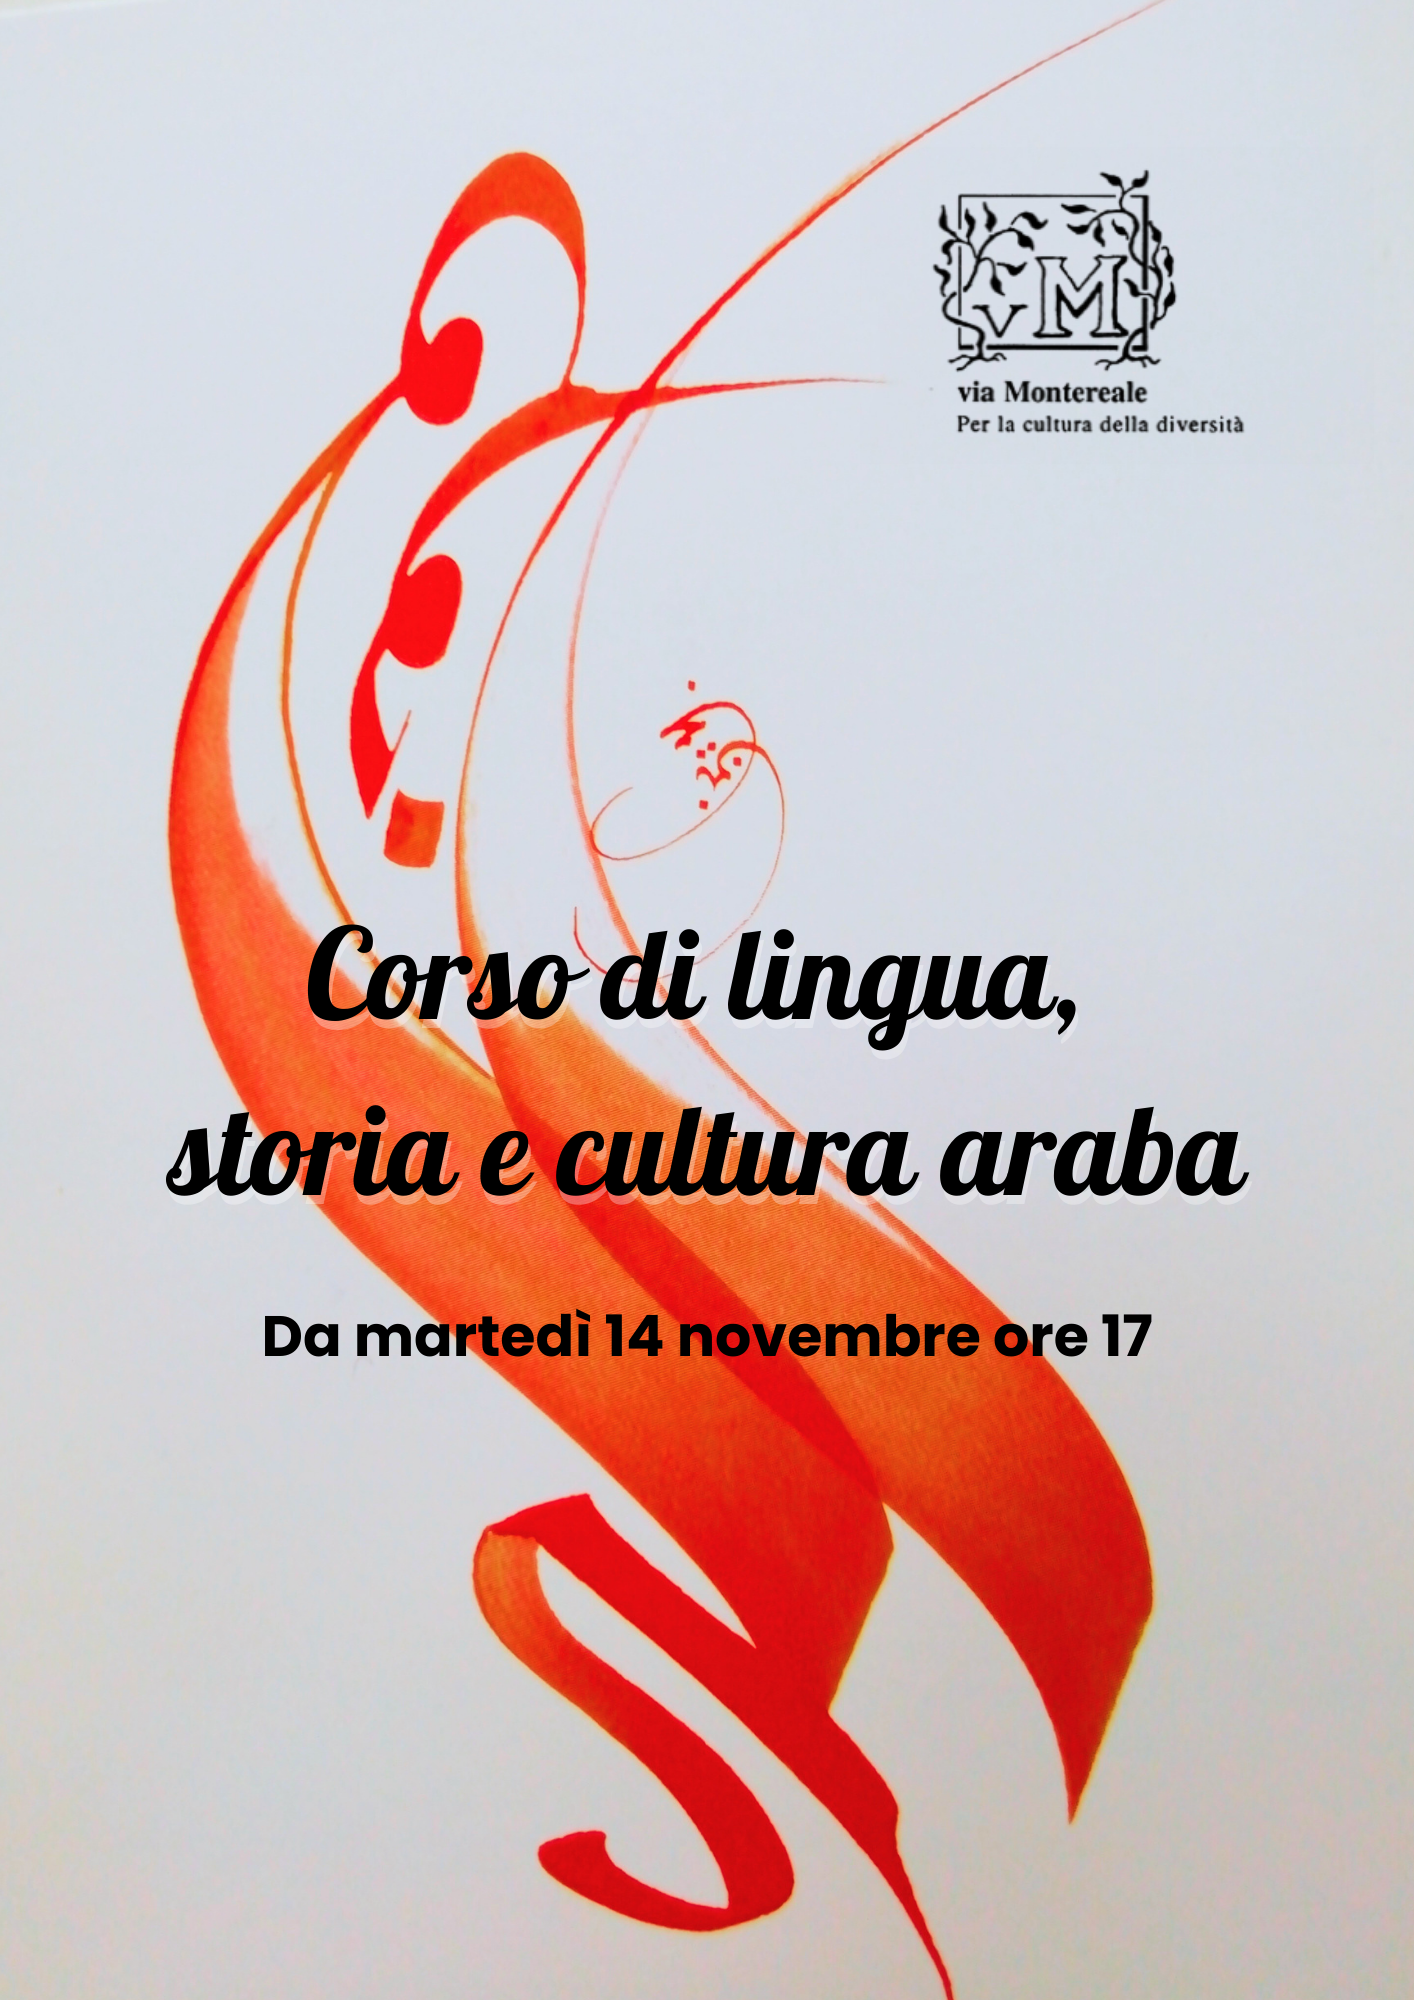 Corsi di lingua storia e cultura araba Associazione "via Montereale" Pordenone